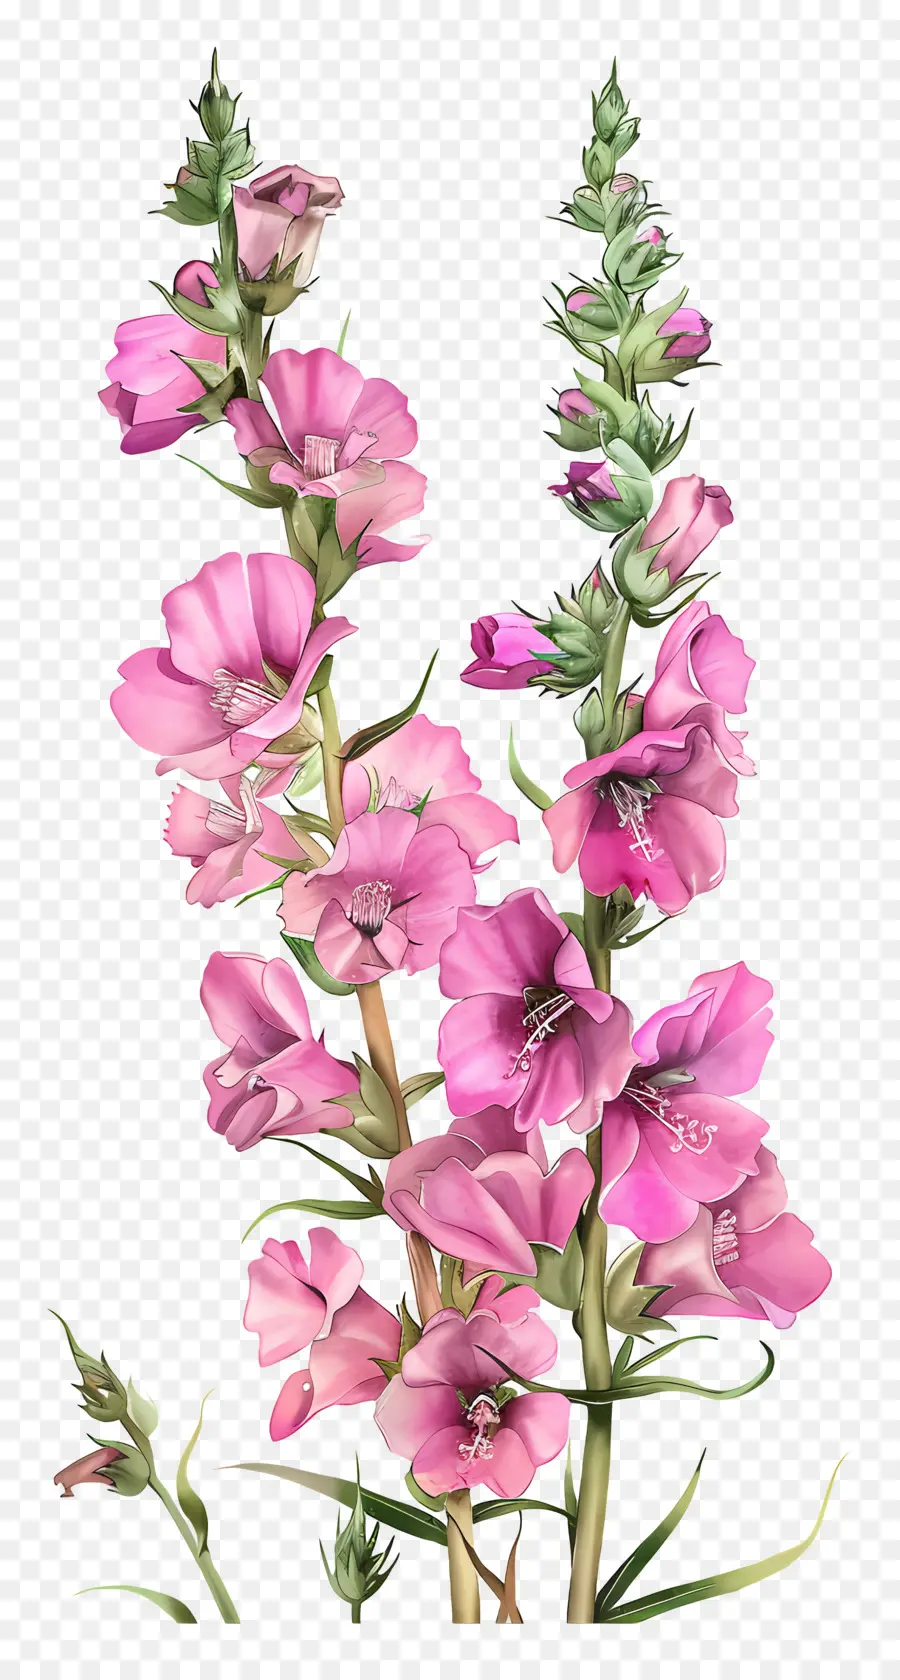 fiore rosa - Grande fiore rosa, petali delicati, immagine classica